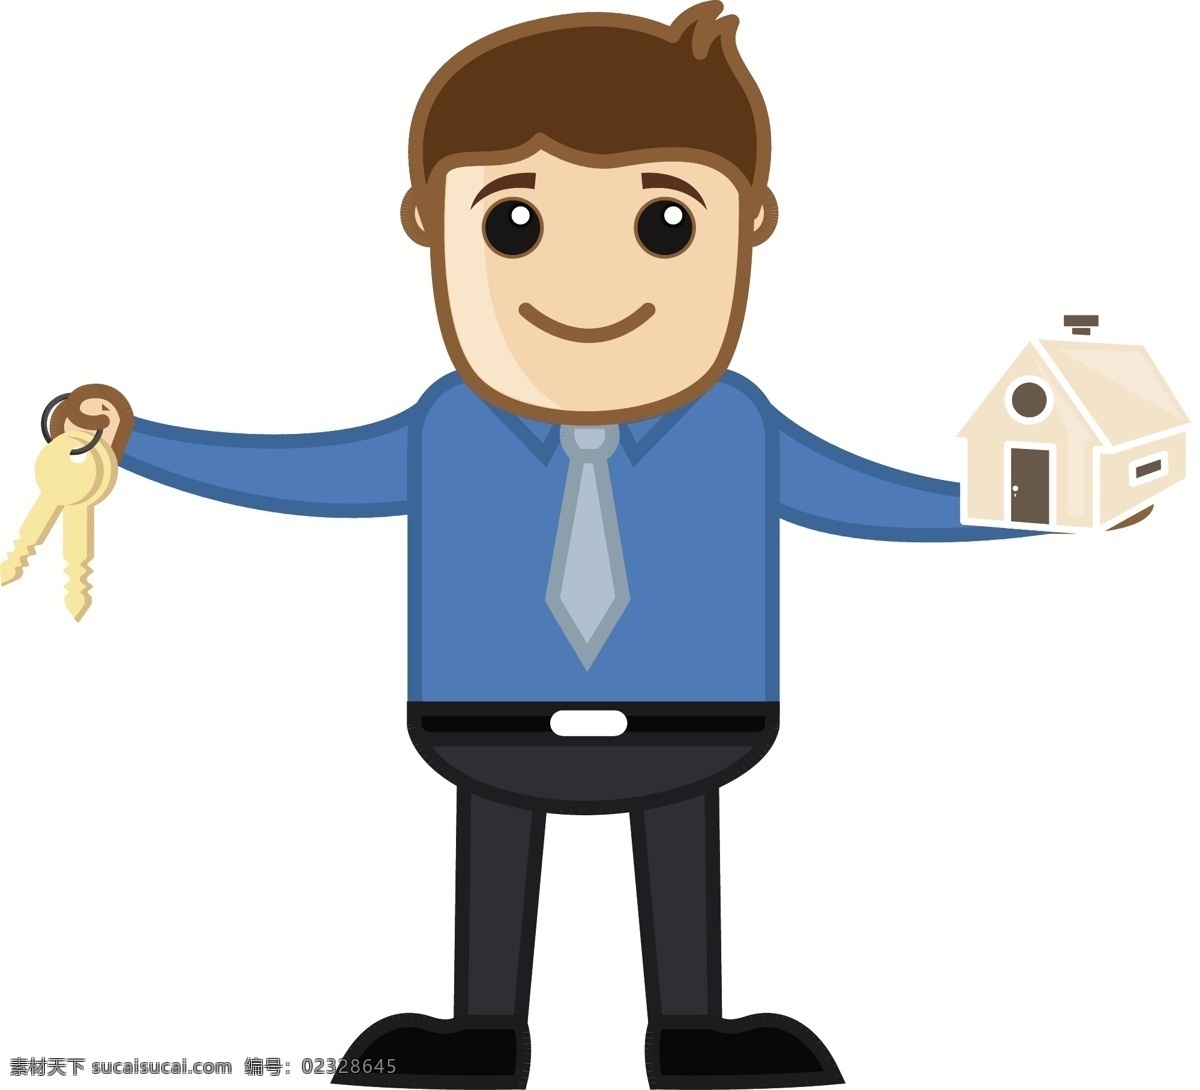 房屋 贷款 房地产 概念 商业 动画 矢量图 矢量人物